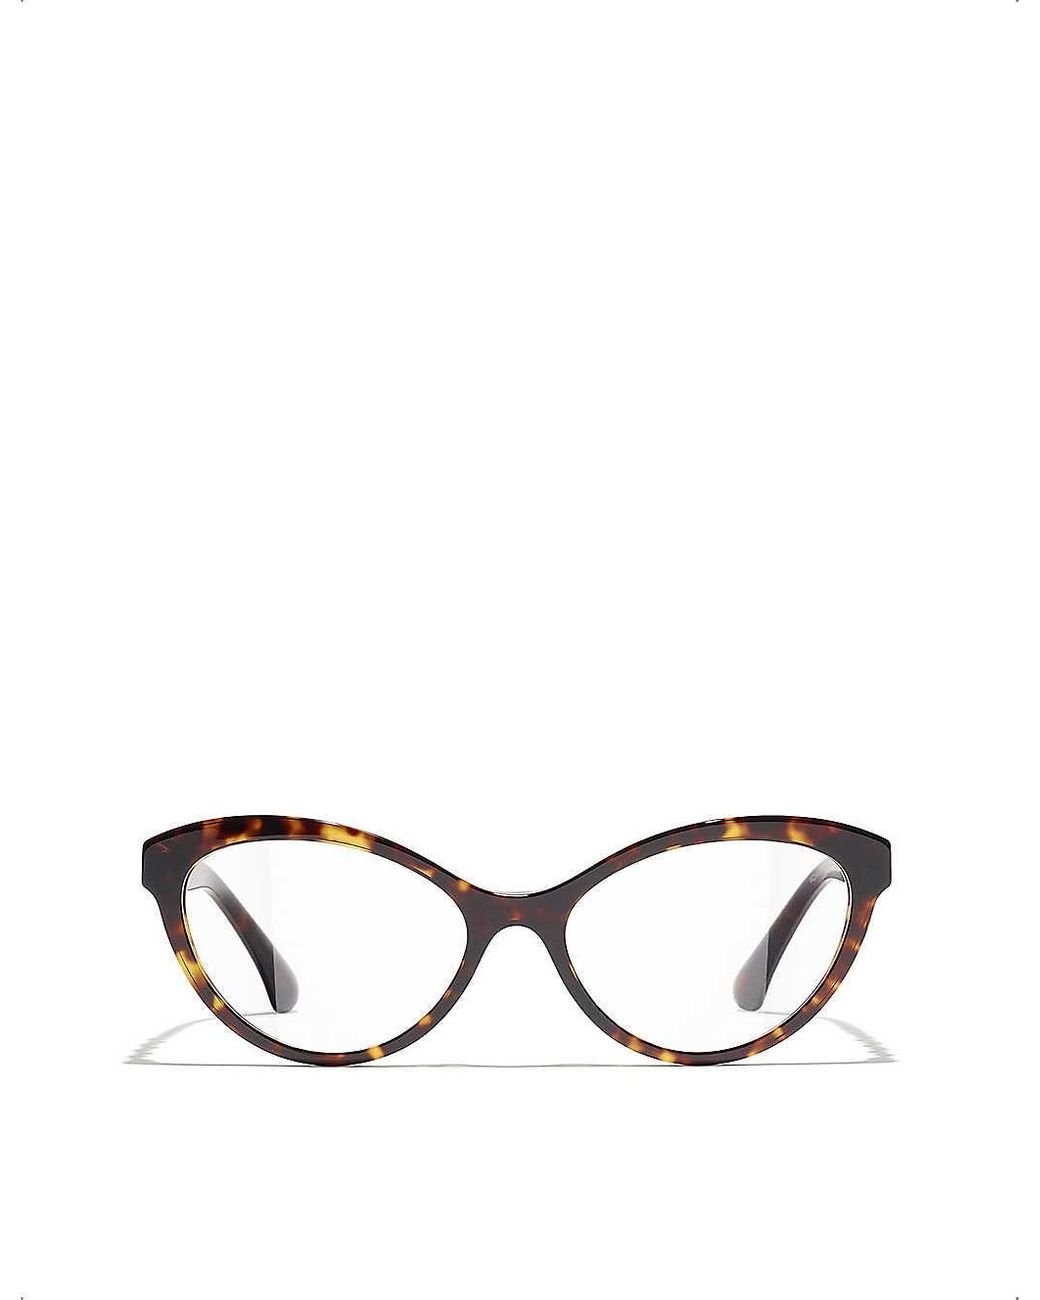 Chanel Cat Eye Eyeglasses in Brown